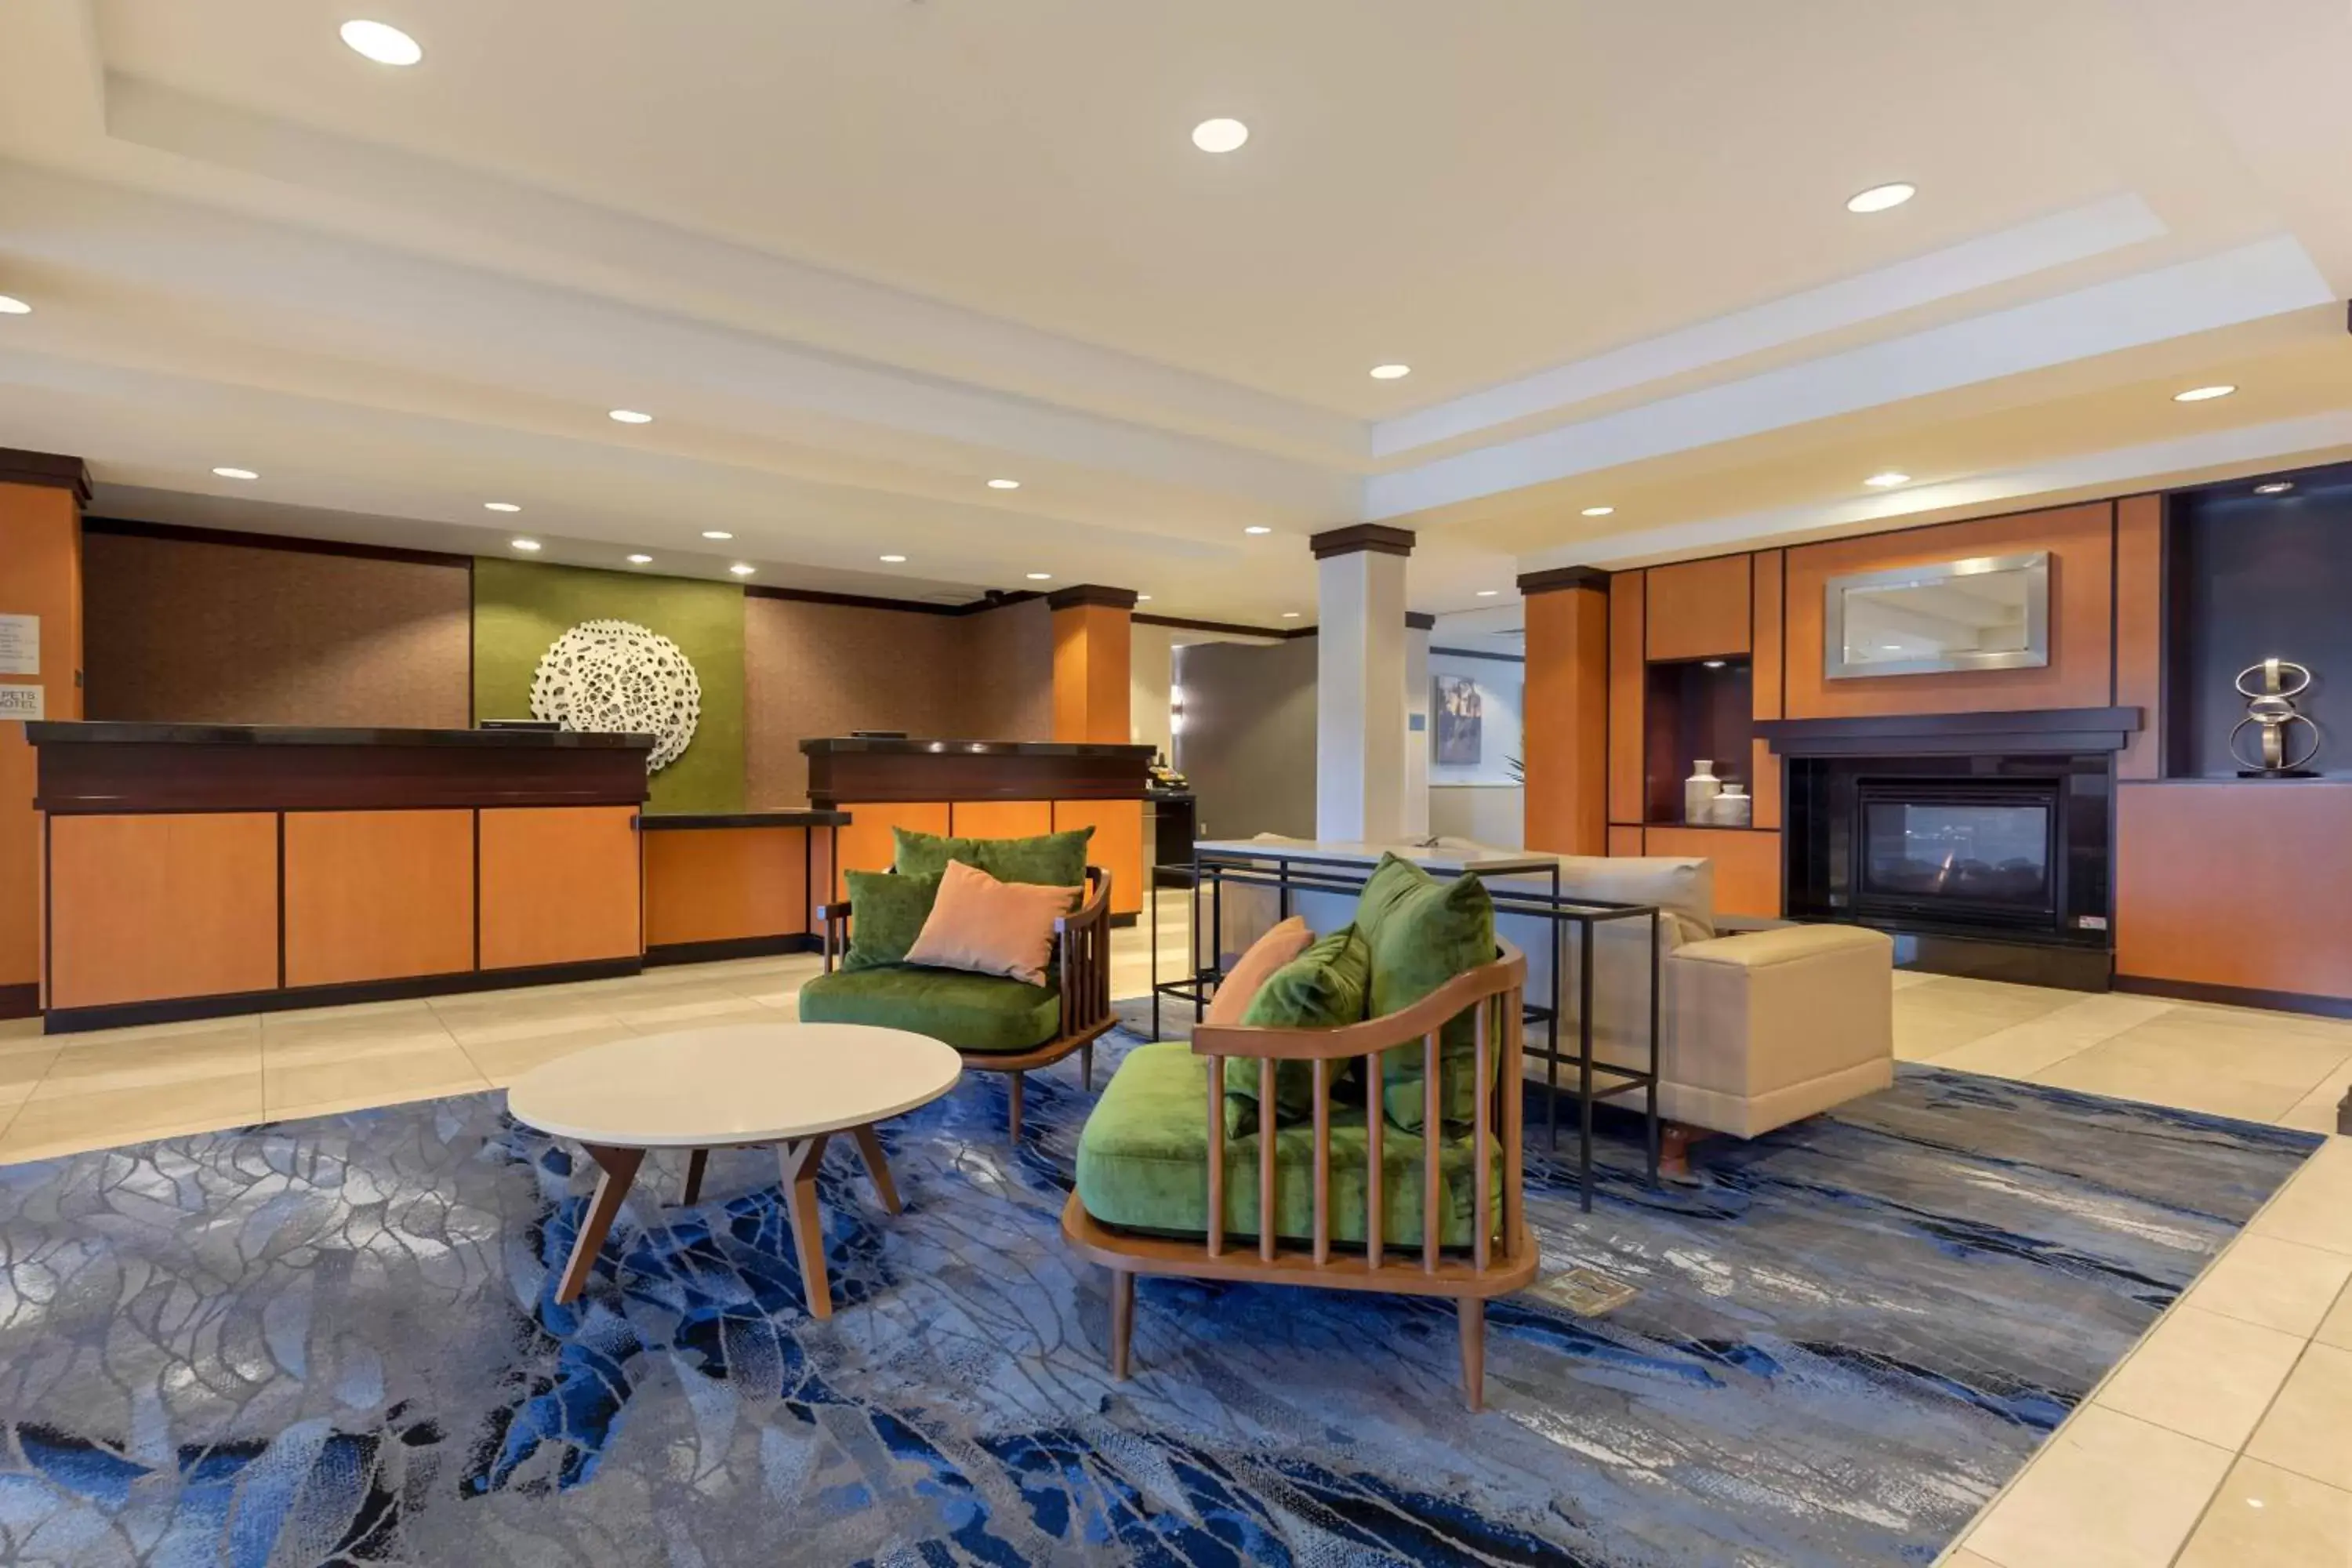 Lobby or reception, Lobby/Reception in Fairfield Inn & Suites by Marriott Rockford